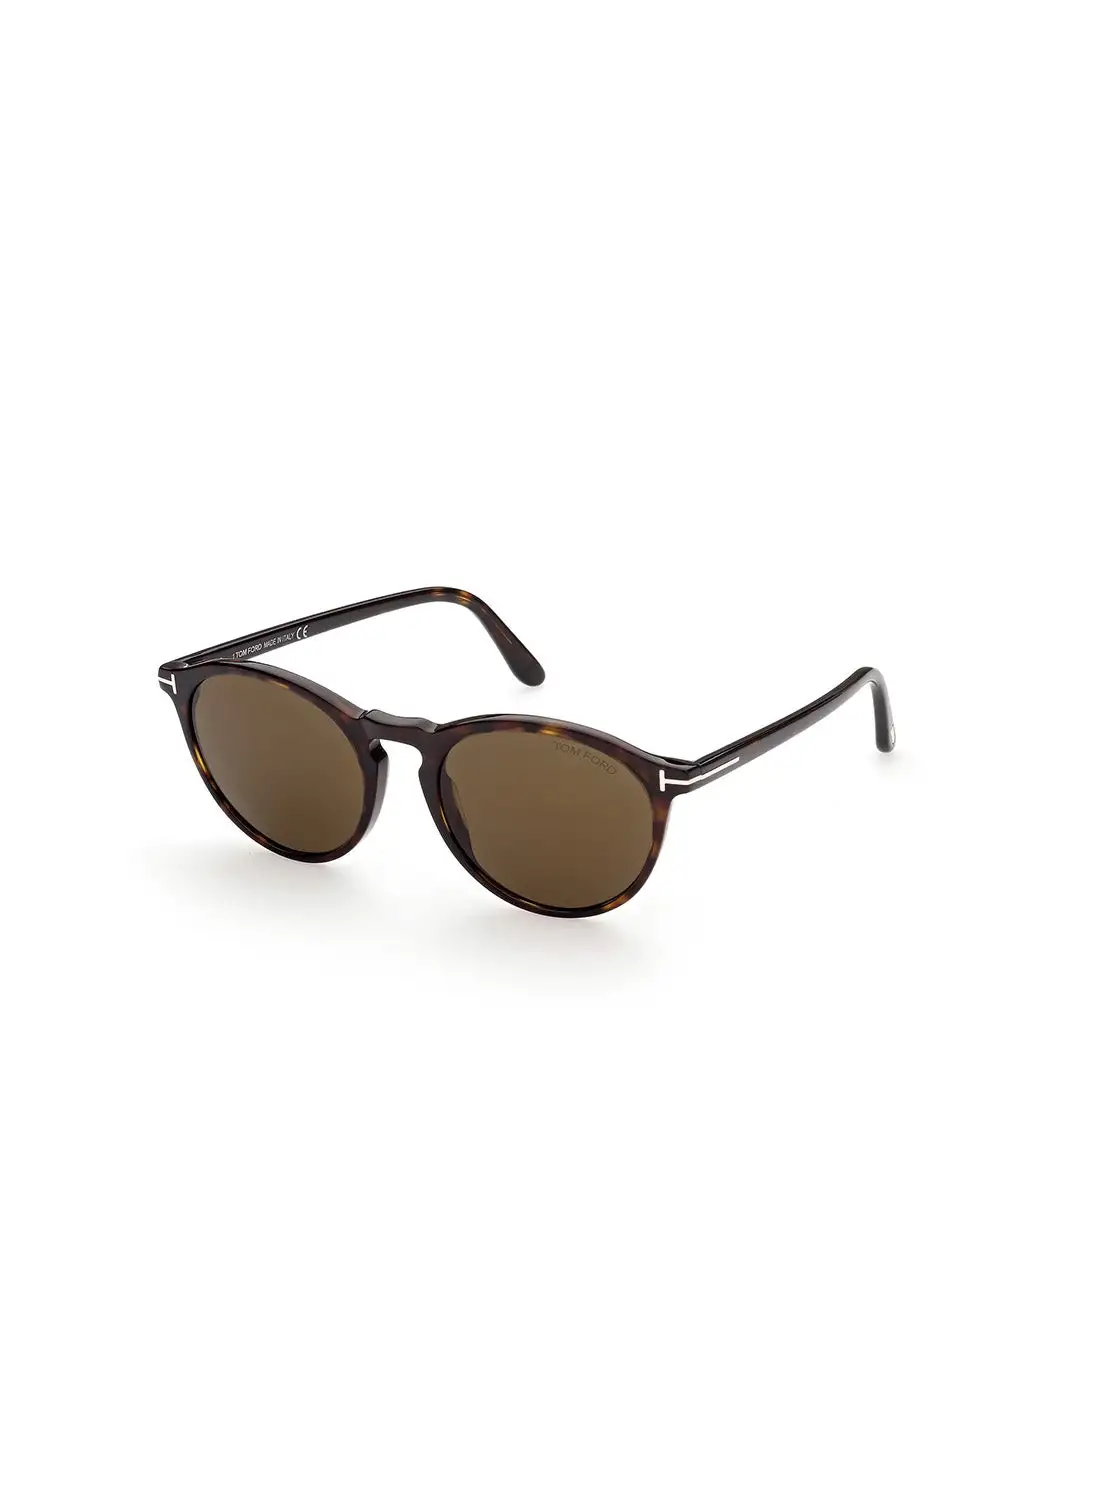 TOM FORD Men's UV Protection Round Sunglasses - FT090452J50 - Lens Size: 50 Mm